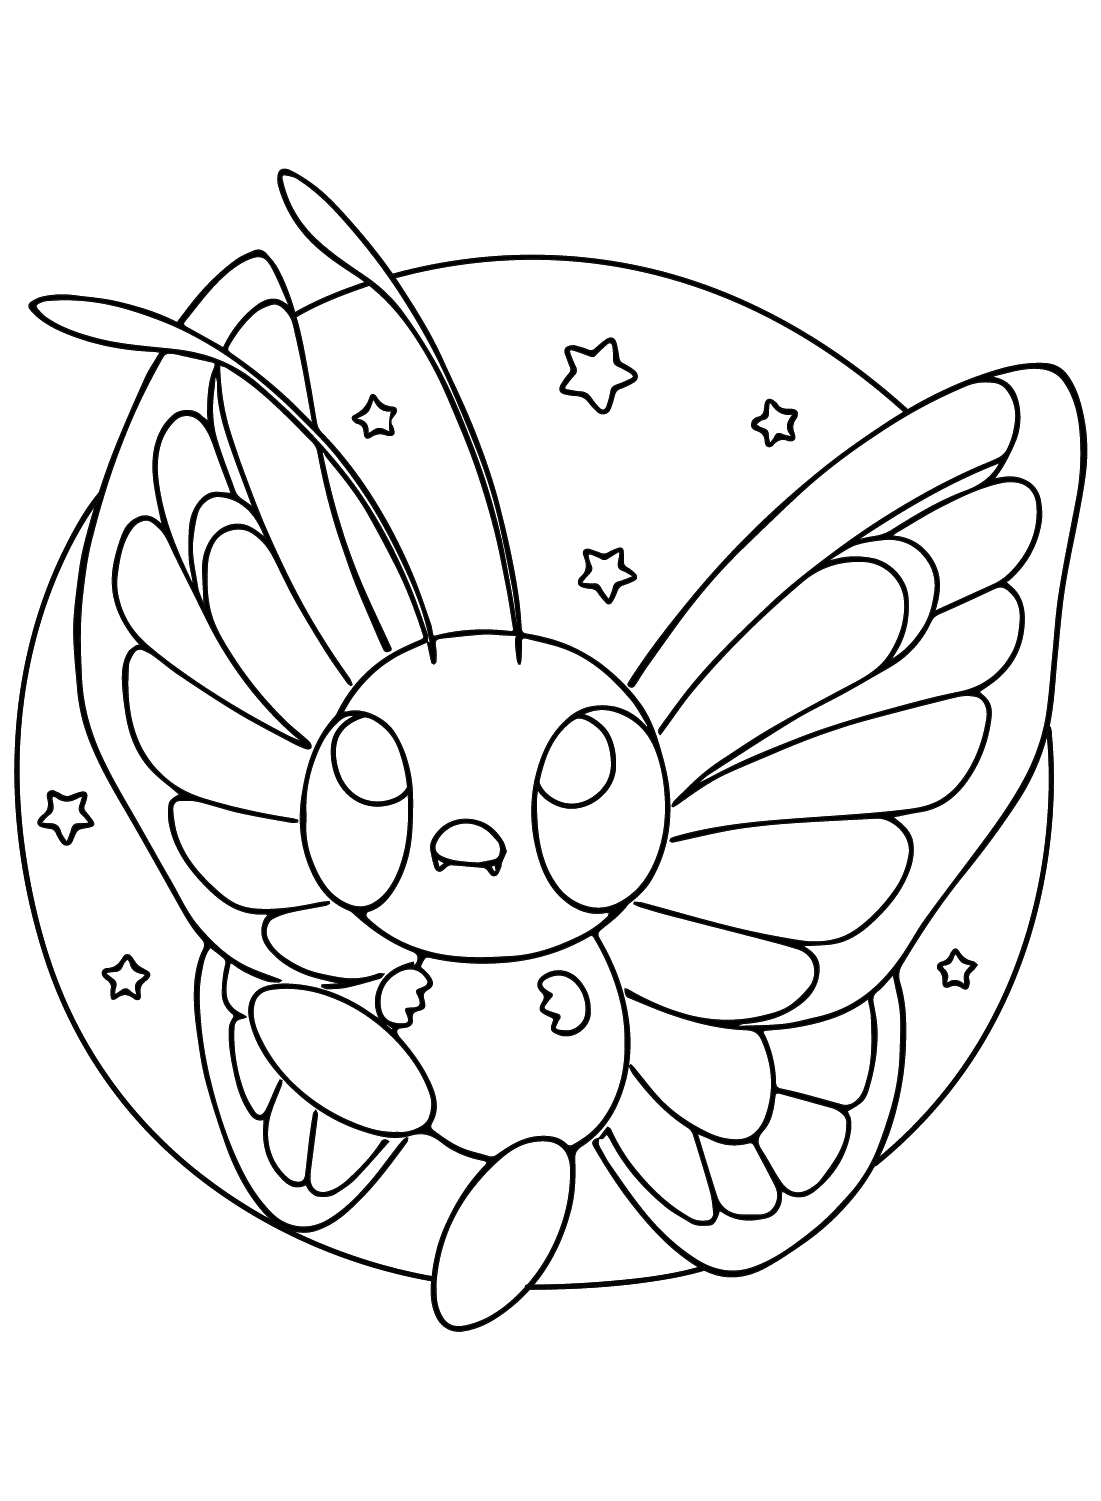 Immagine Pokemon Butterfree da colorare di Butterfree